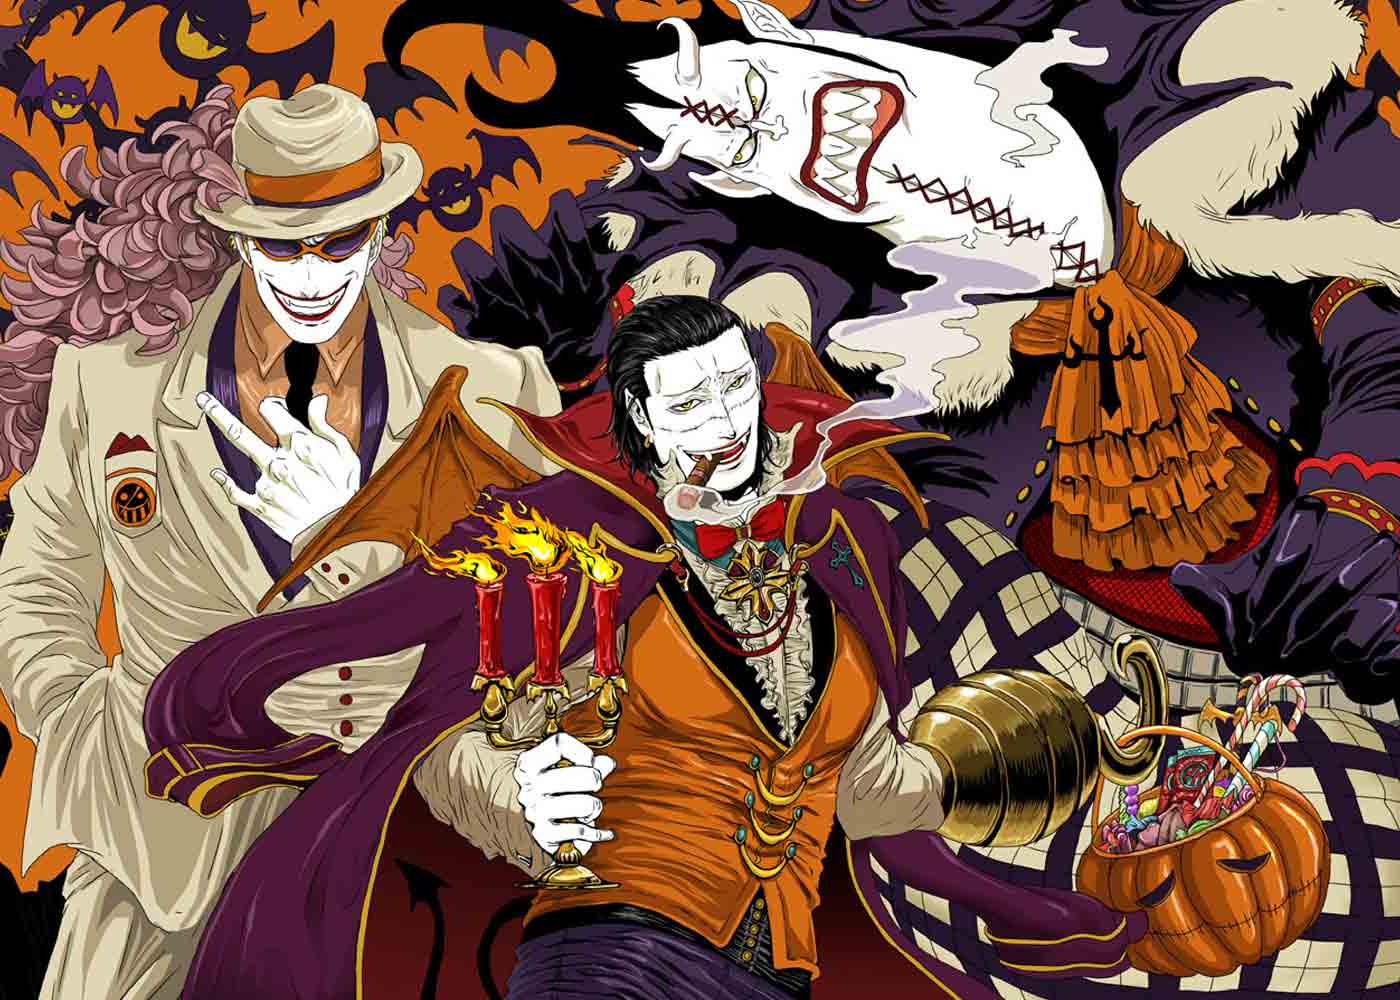 Spoiler Resmi One Piece 1062: Model Baru Seraphim Muncul, Keseruan